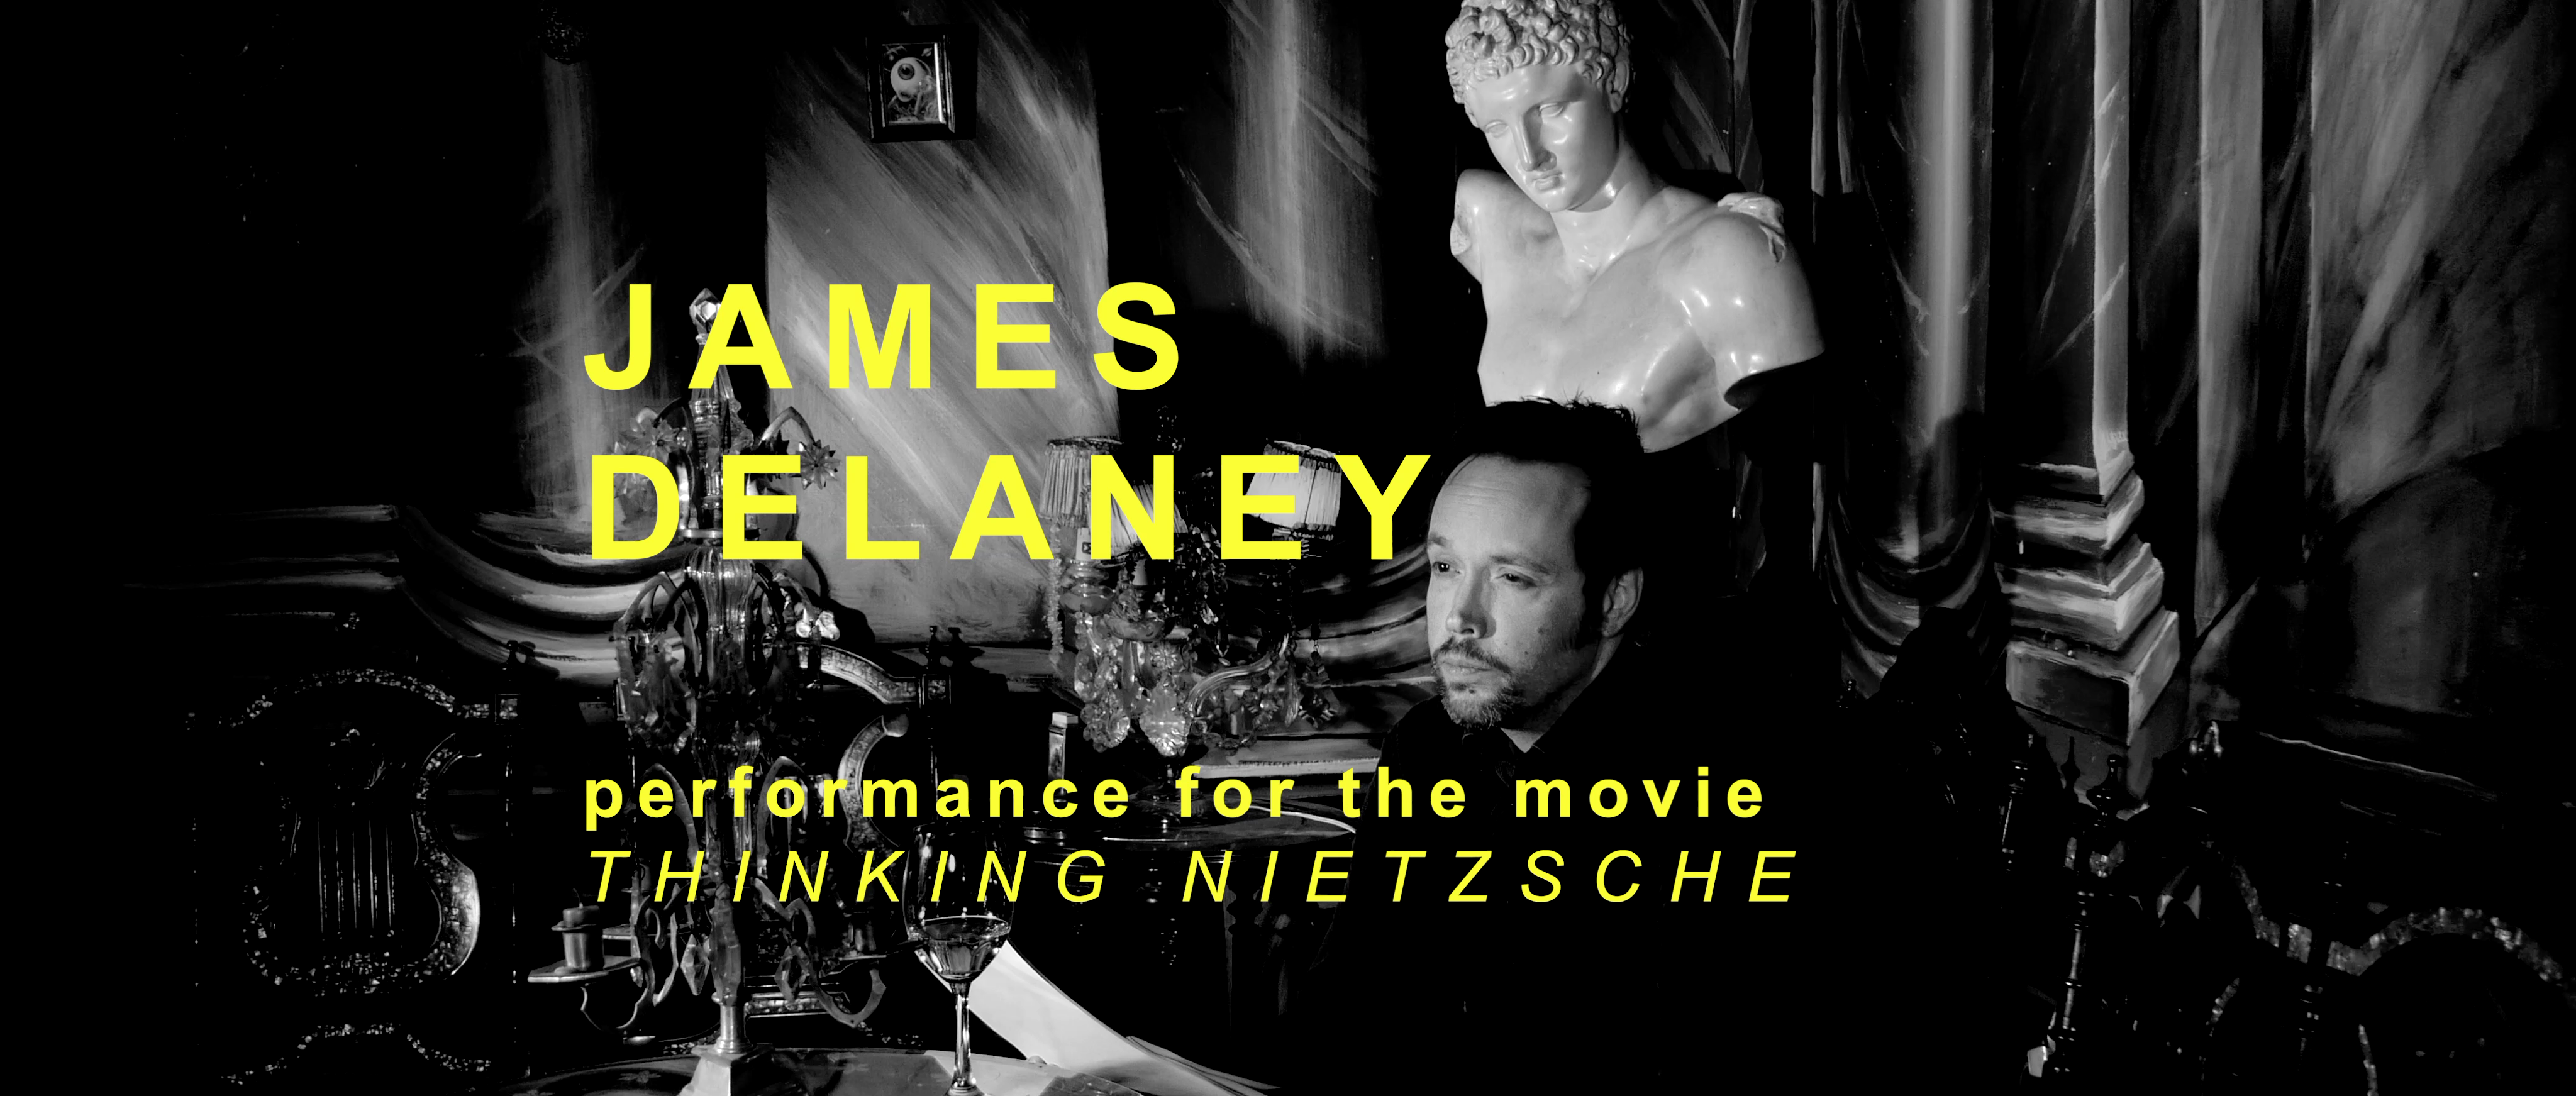 James Delaney - THINKING NIETZSCHE Performance (Still) - by Mersolis Schöne